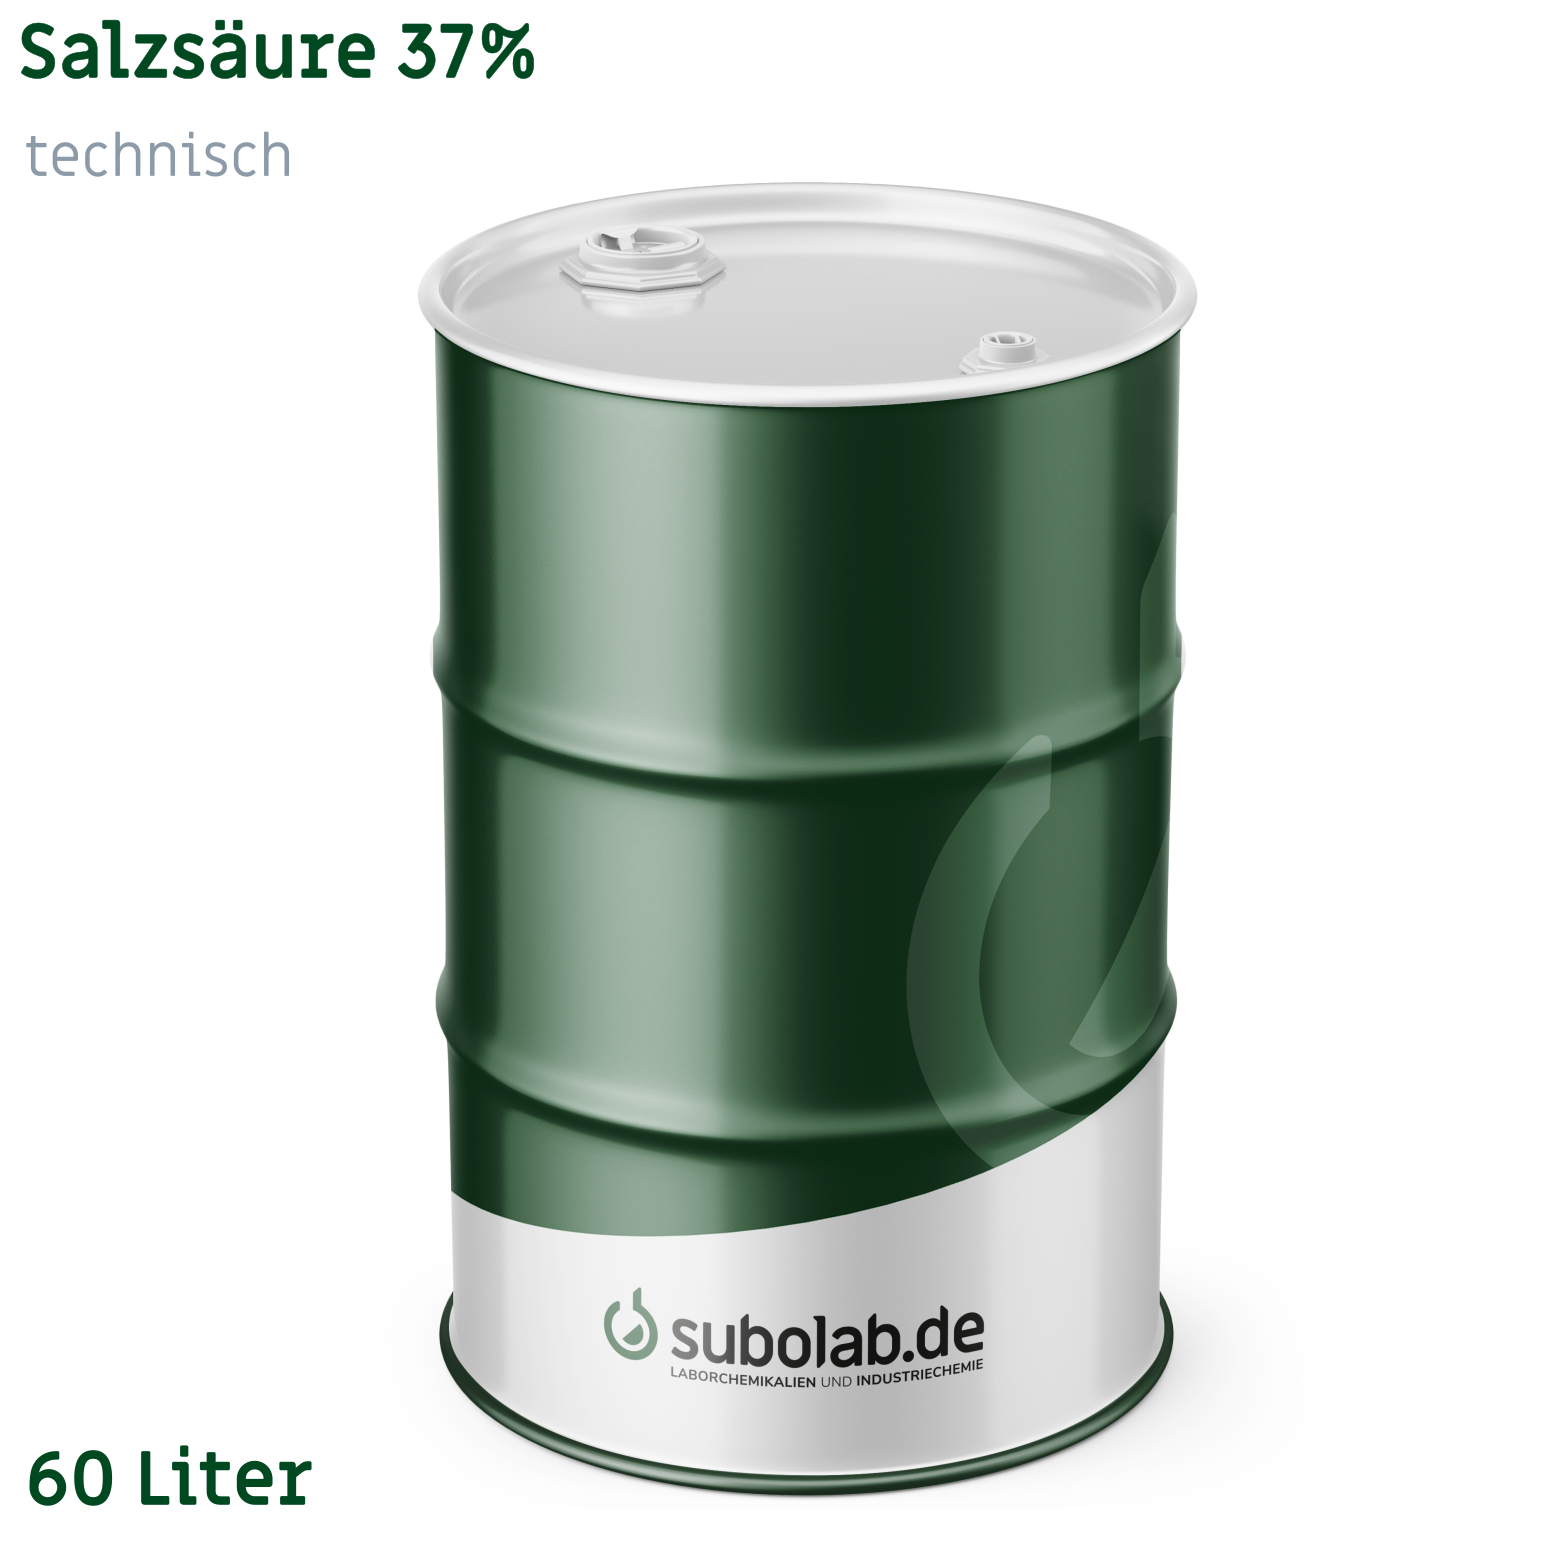 Bild von Salzsäure 37% technisch (60 Liter)